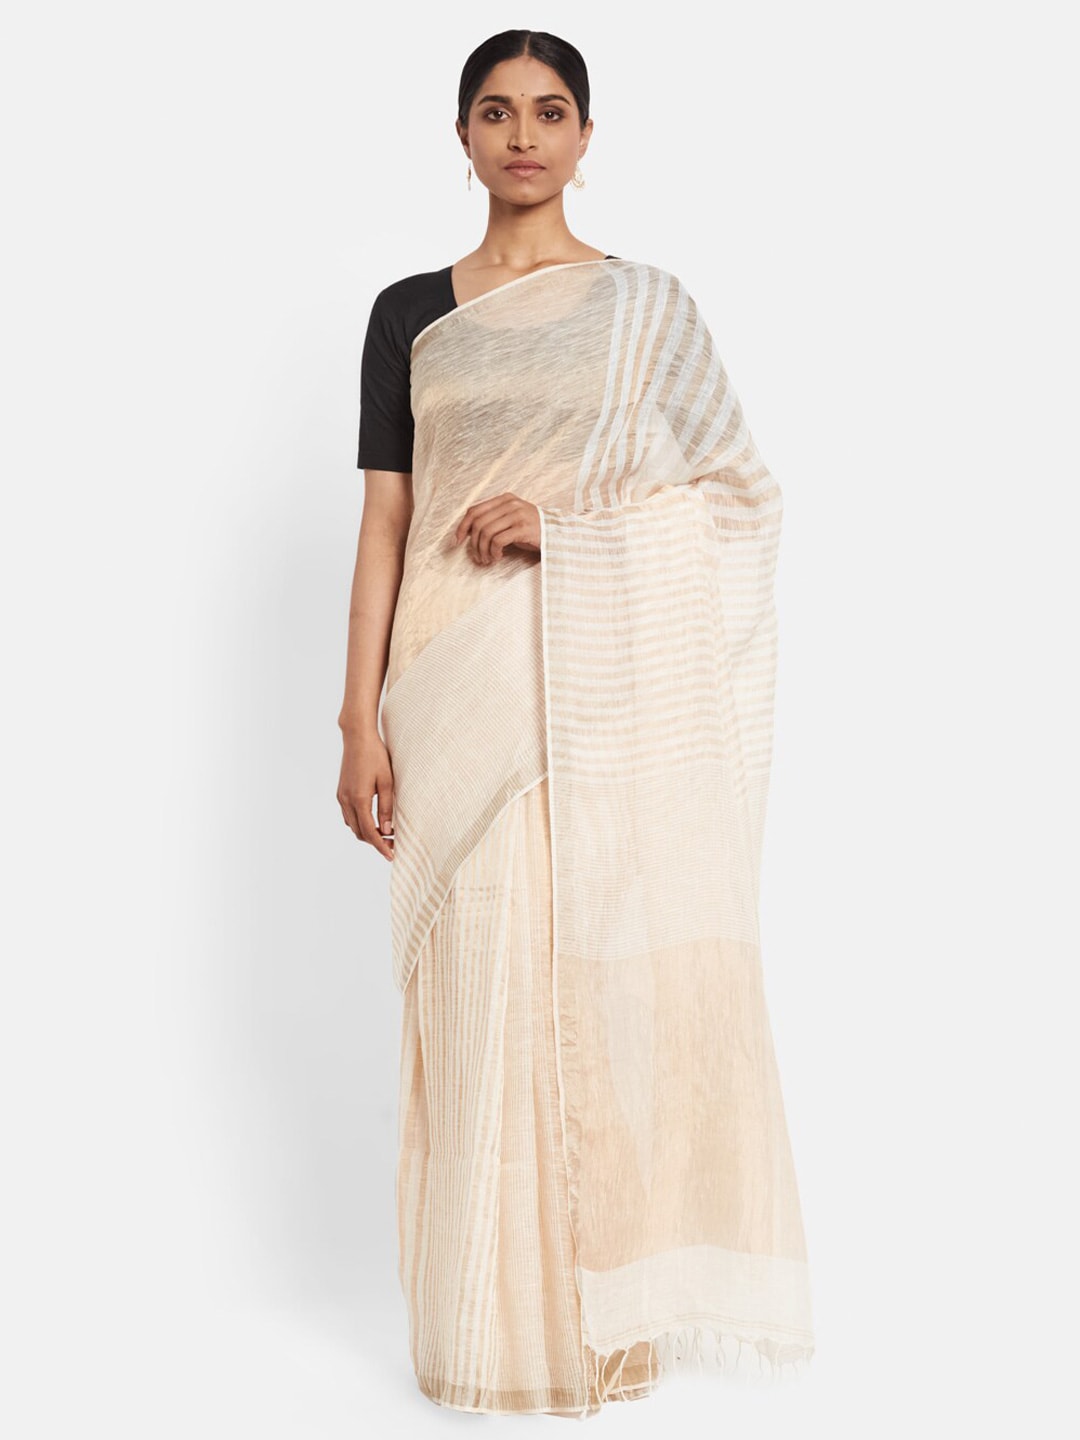 Fabindia Off White & Cream-Coloured Striped Zari Pure Linen Saree Price in India